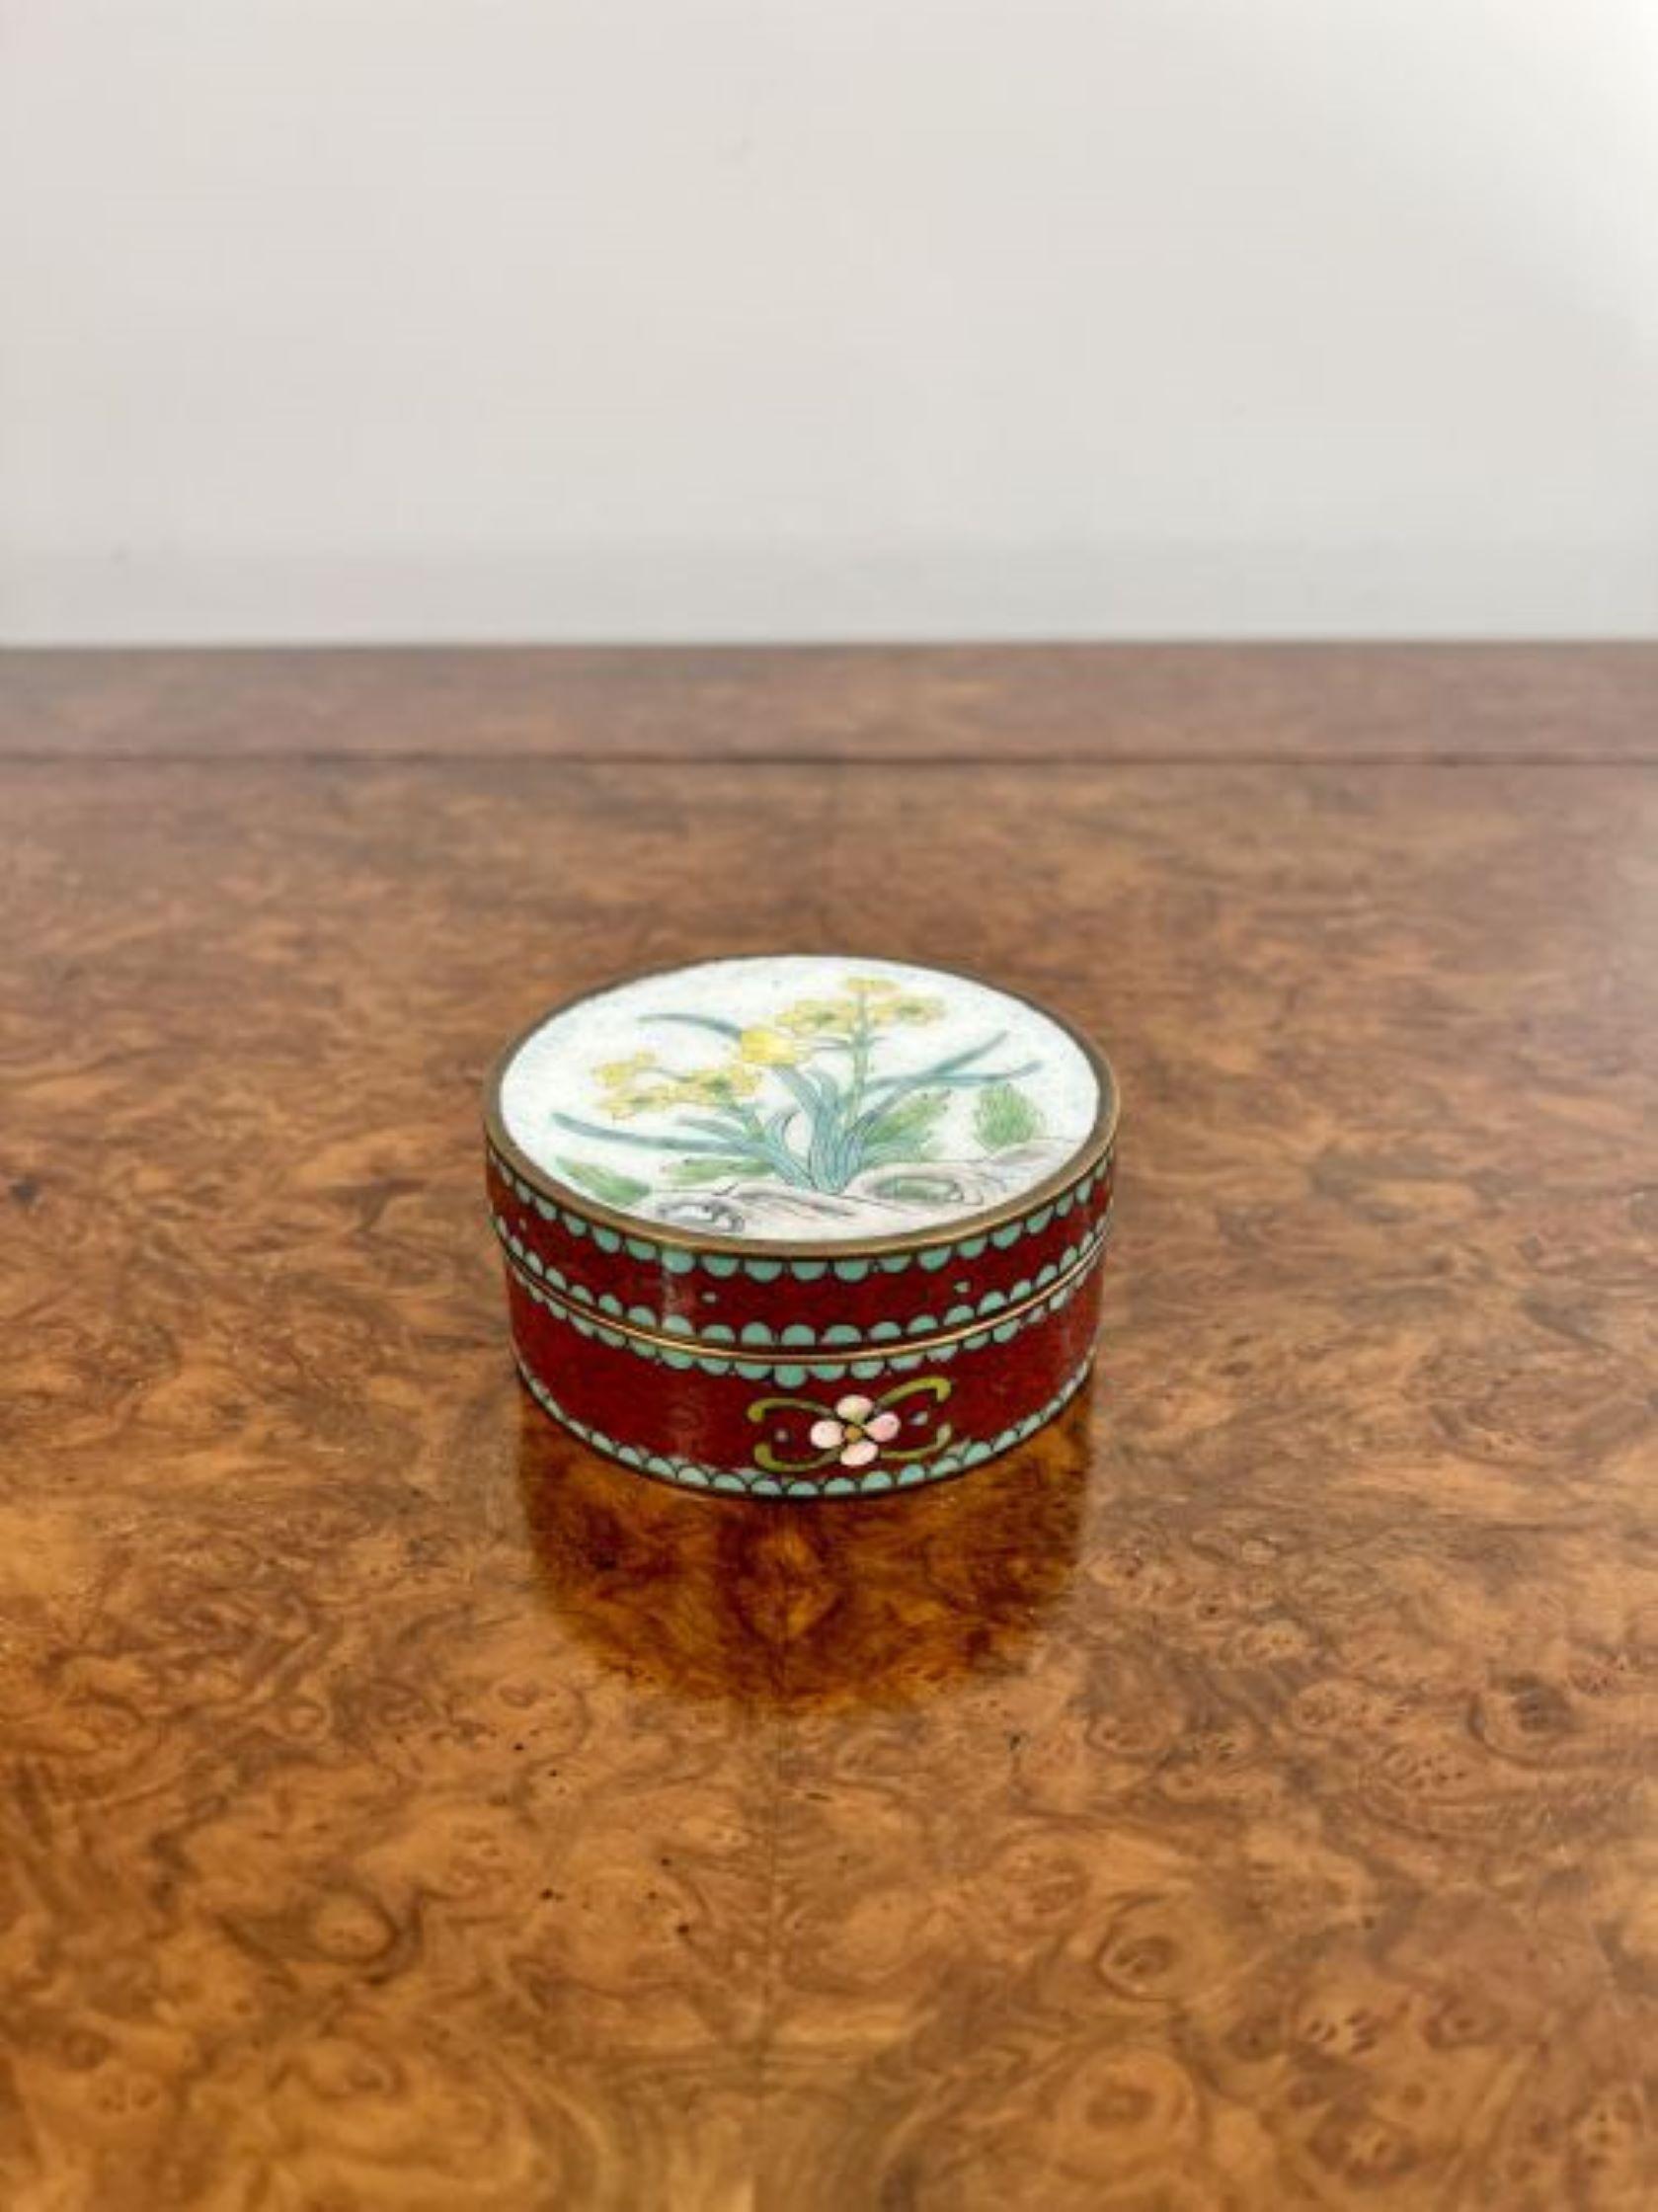 Antike Edwardian Qualität chinesischen Cloisonné kreisförmige Schmuckdose mit einer Qualität antiken Edwardian chinesischen Cloisonné kreisförmige Schmuckdose mit einem Lift-off-Deckel mit gelben Blumen und grünen Blättern verziert.